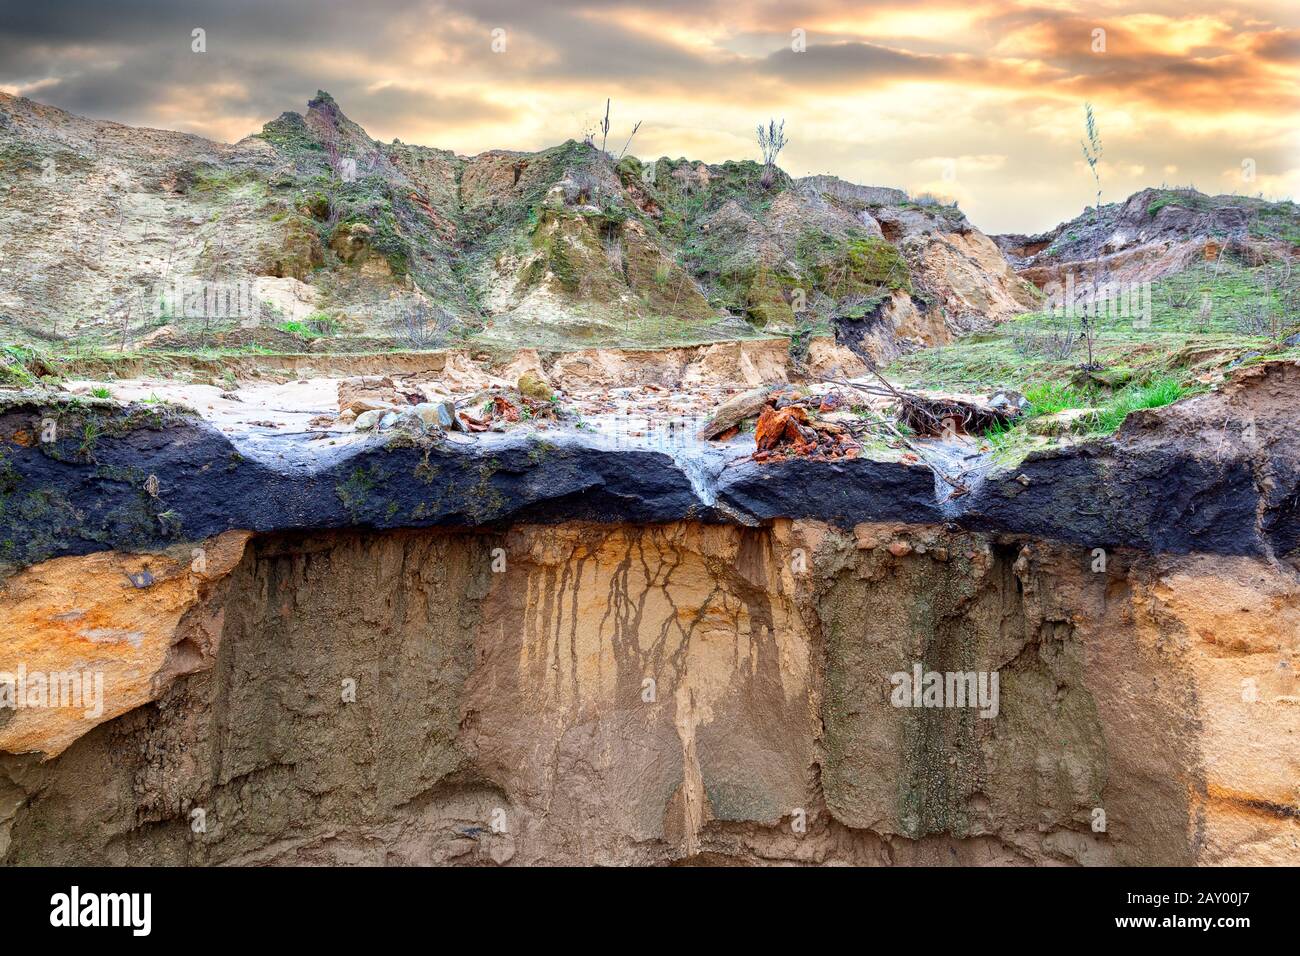 Érosion créneuse dans une décharge de déchets industriels près de Bielefeld, dans le nord-ouest de l'Allemagne. Les matières dangereuses sont lavées et pénètrent dans les sols à un niveau inférieur Banque D'Images